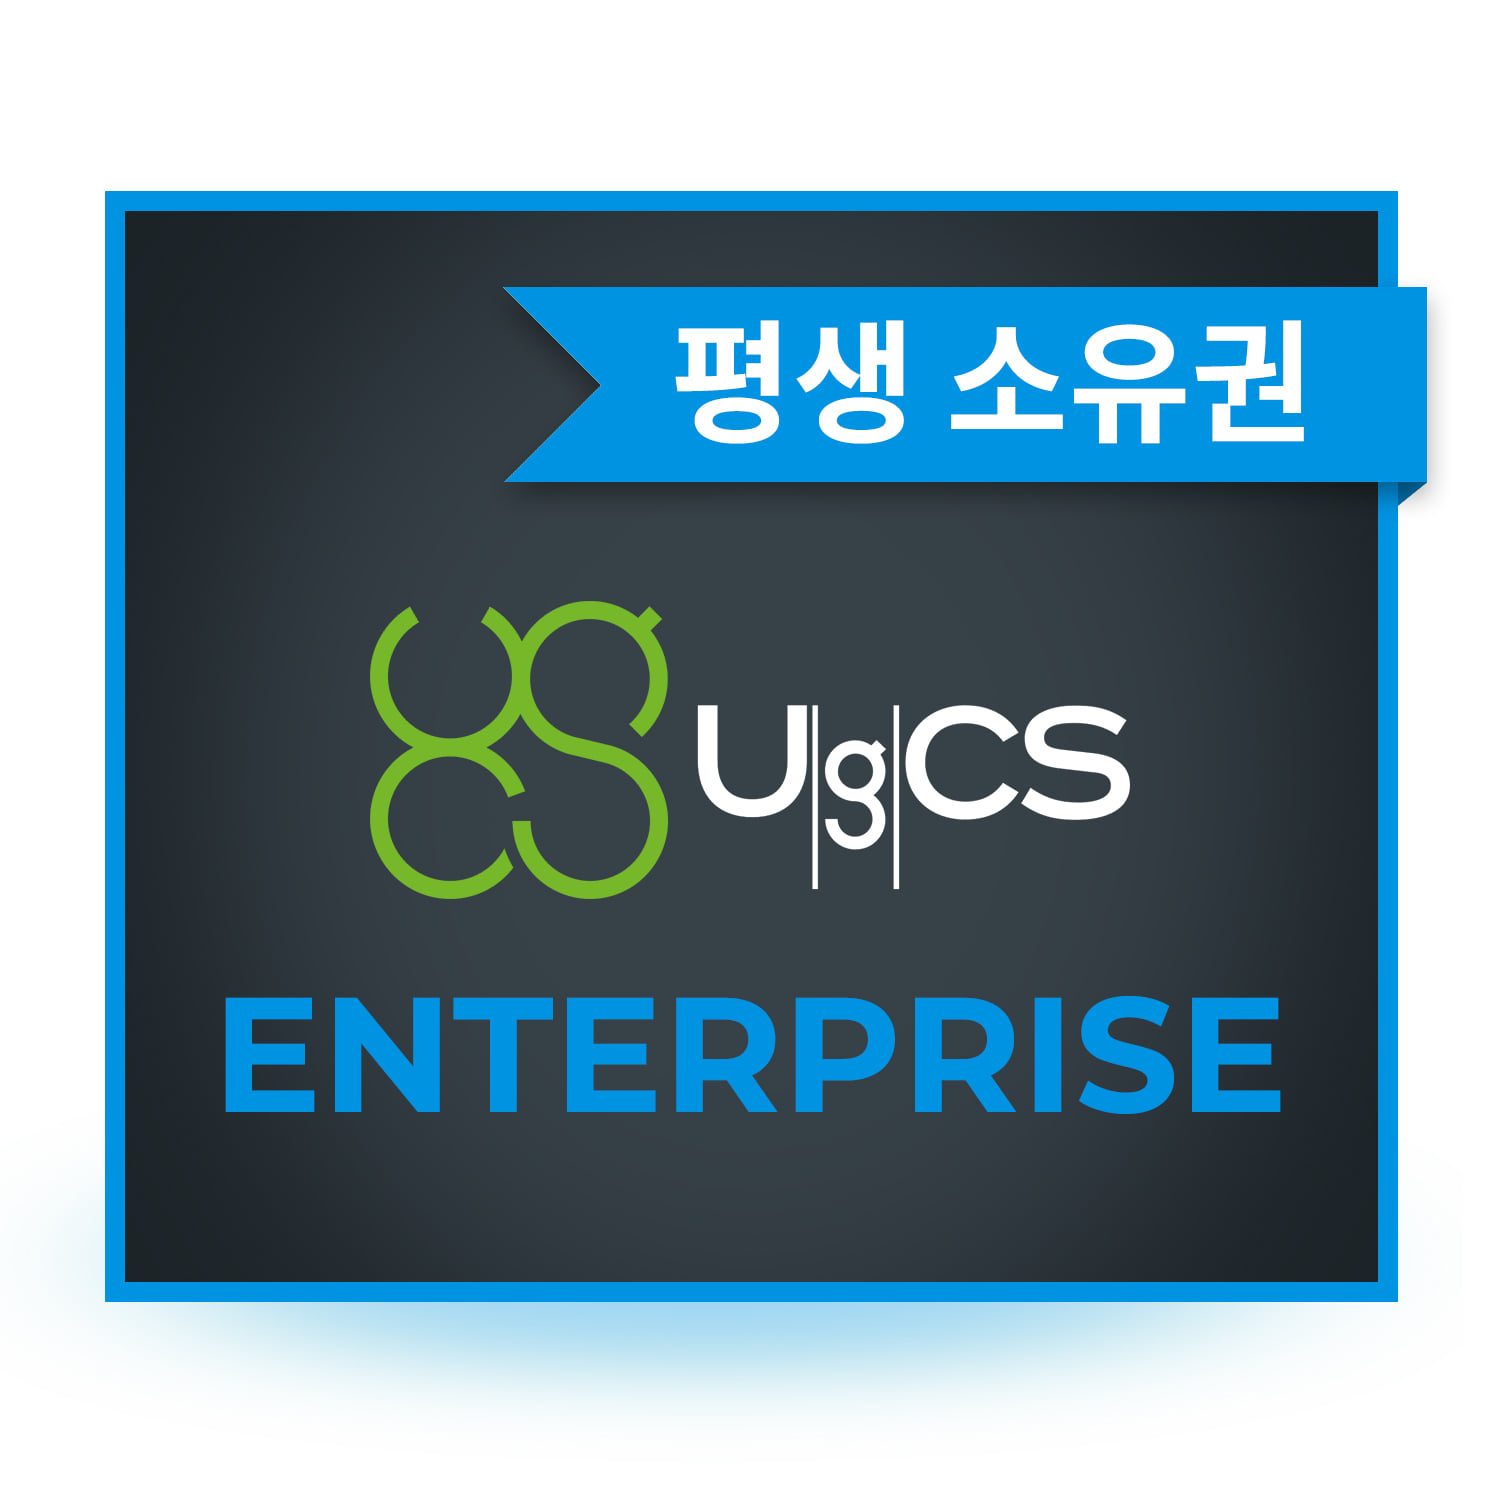 UgCS Enterprise 드론관제 측량 소프트웨어 평생소유 헬셀